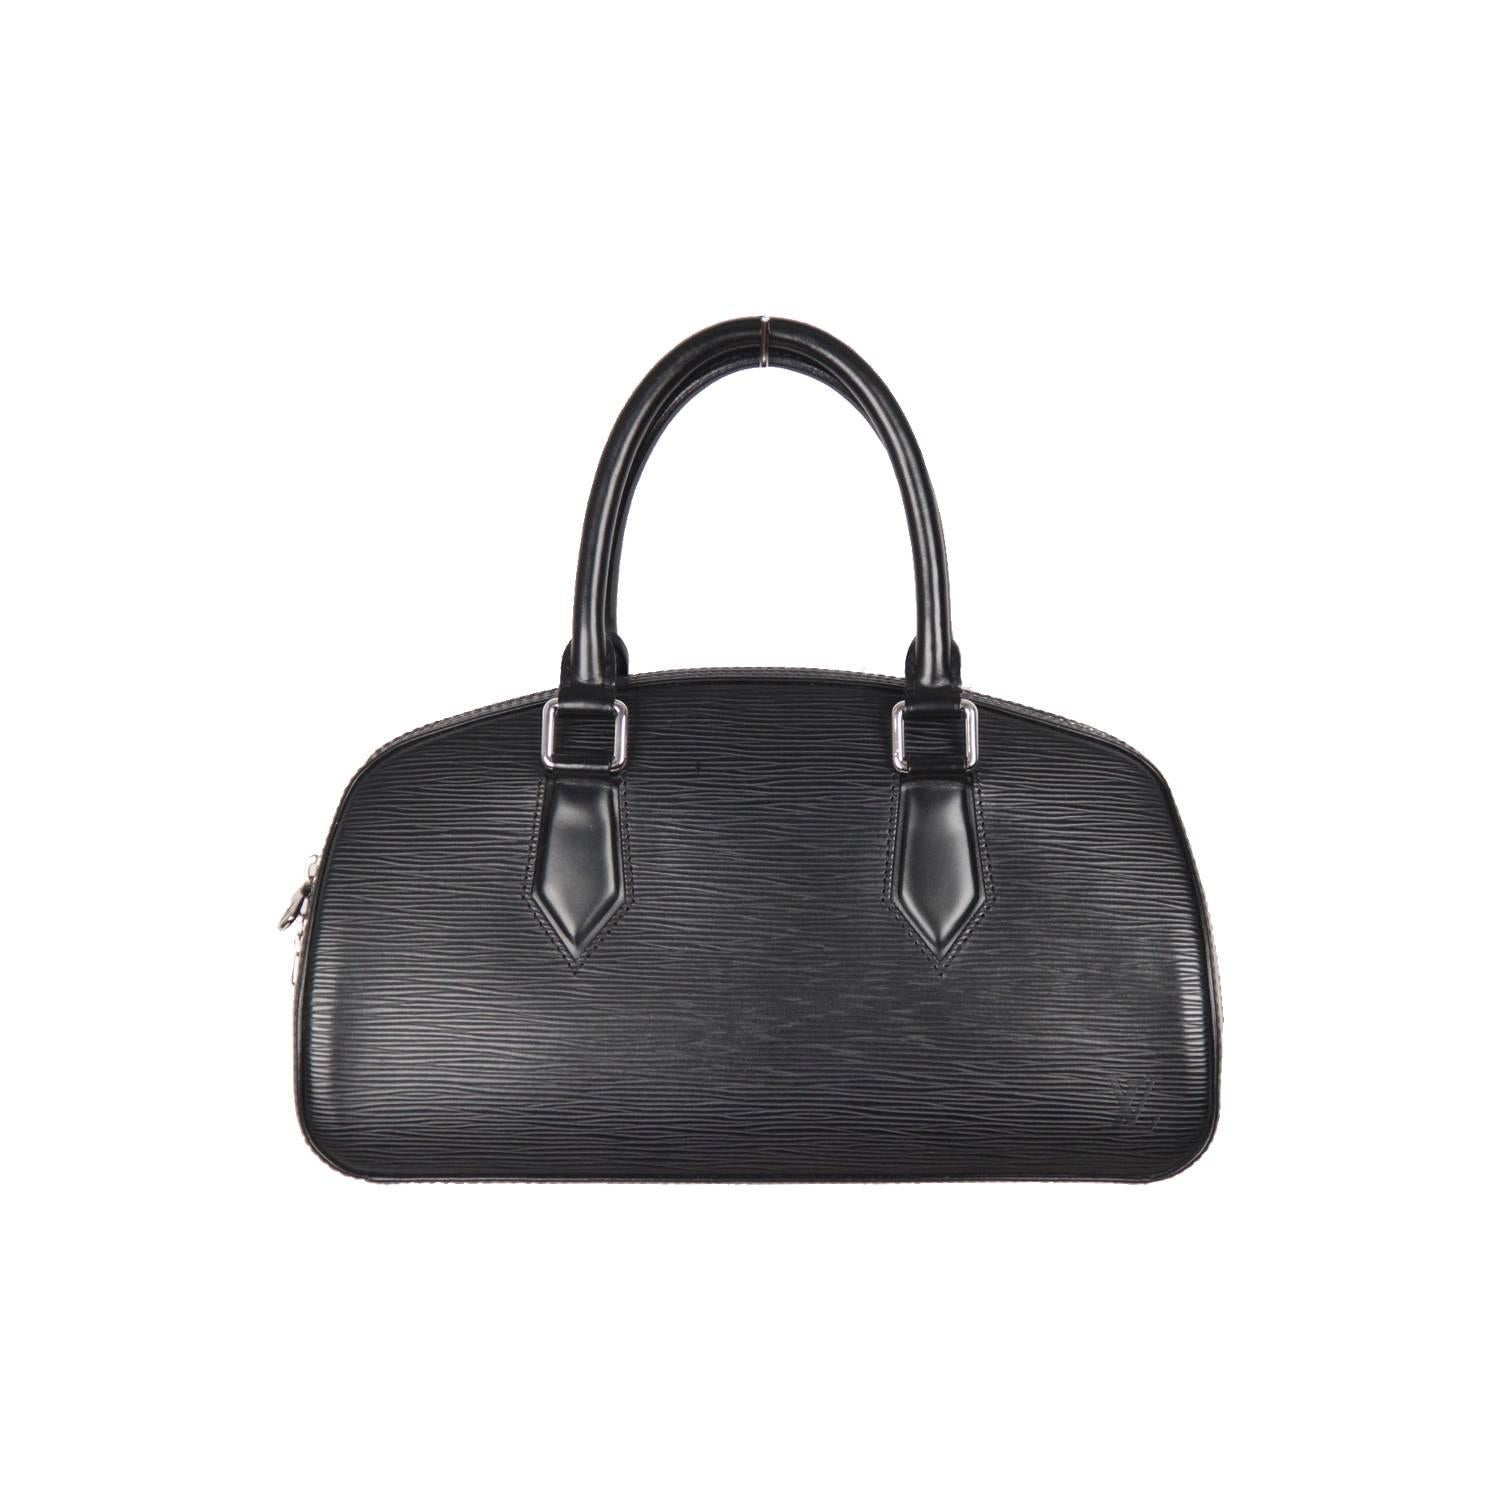 LOUIS VUITTON Black EPI Leather JASMINE Bag SATCHEL